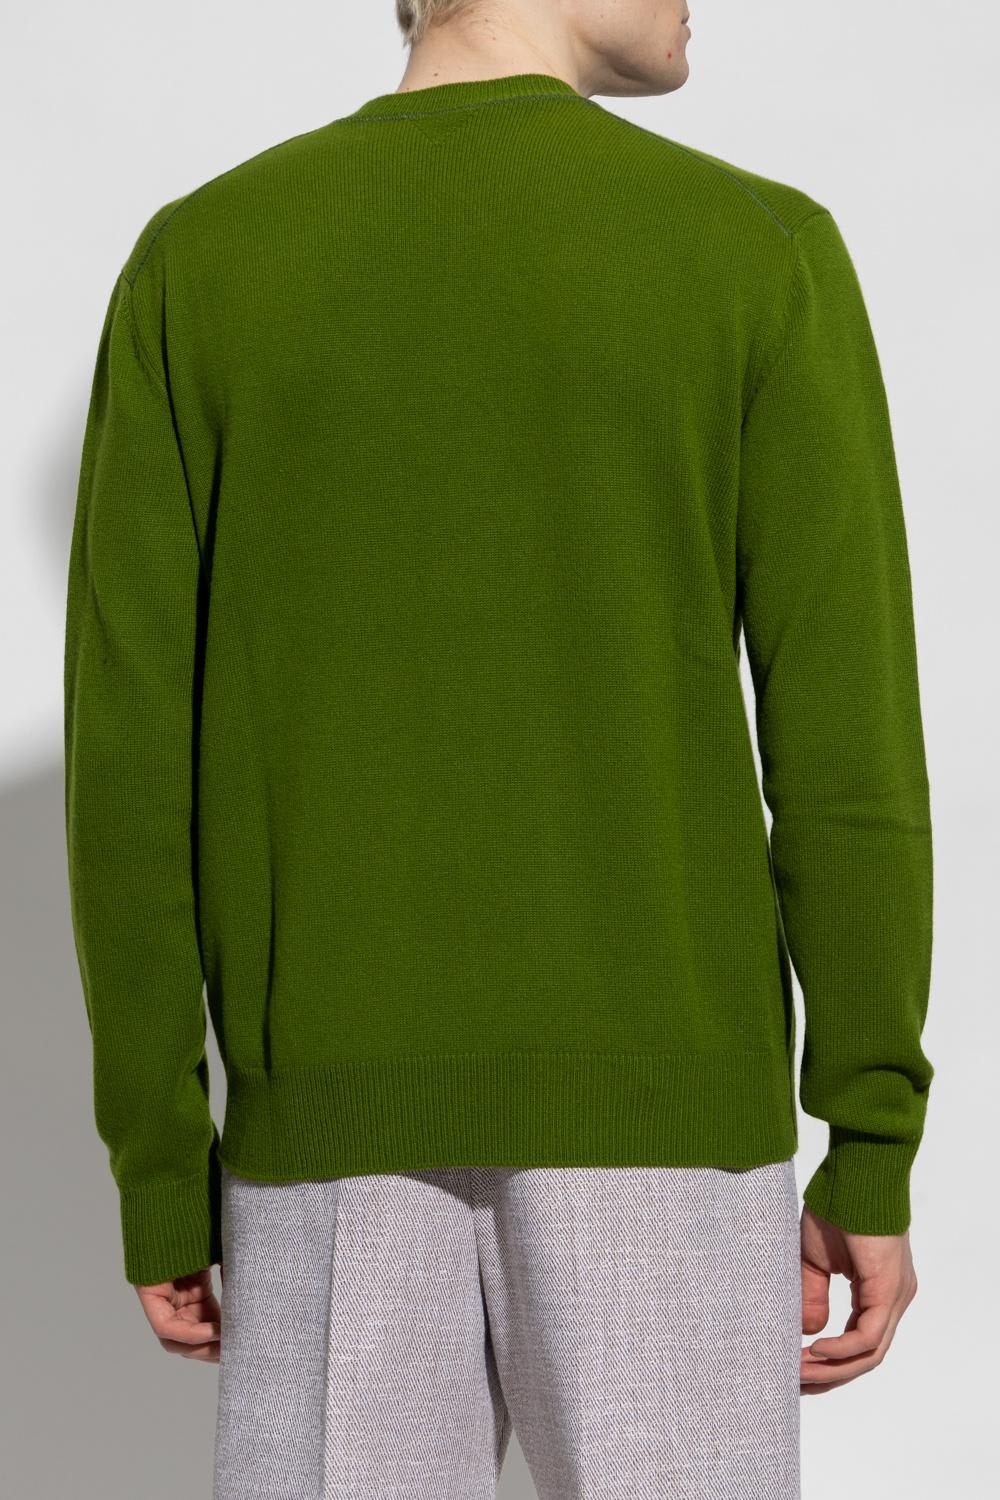 Bottega Veneta Green Cashmere Sweater | ModeSens